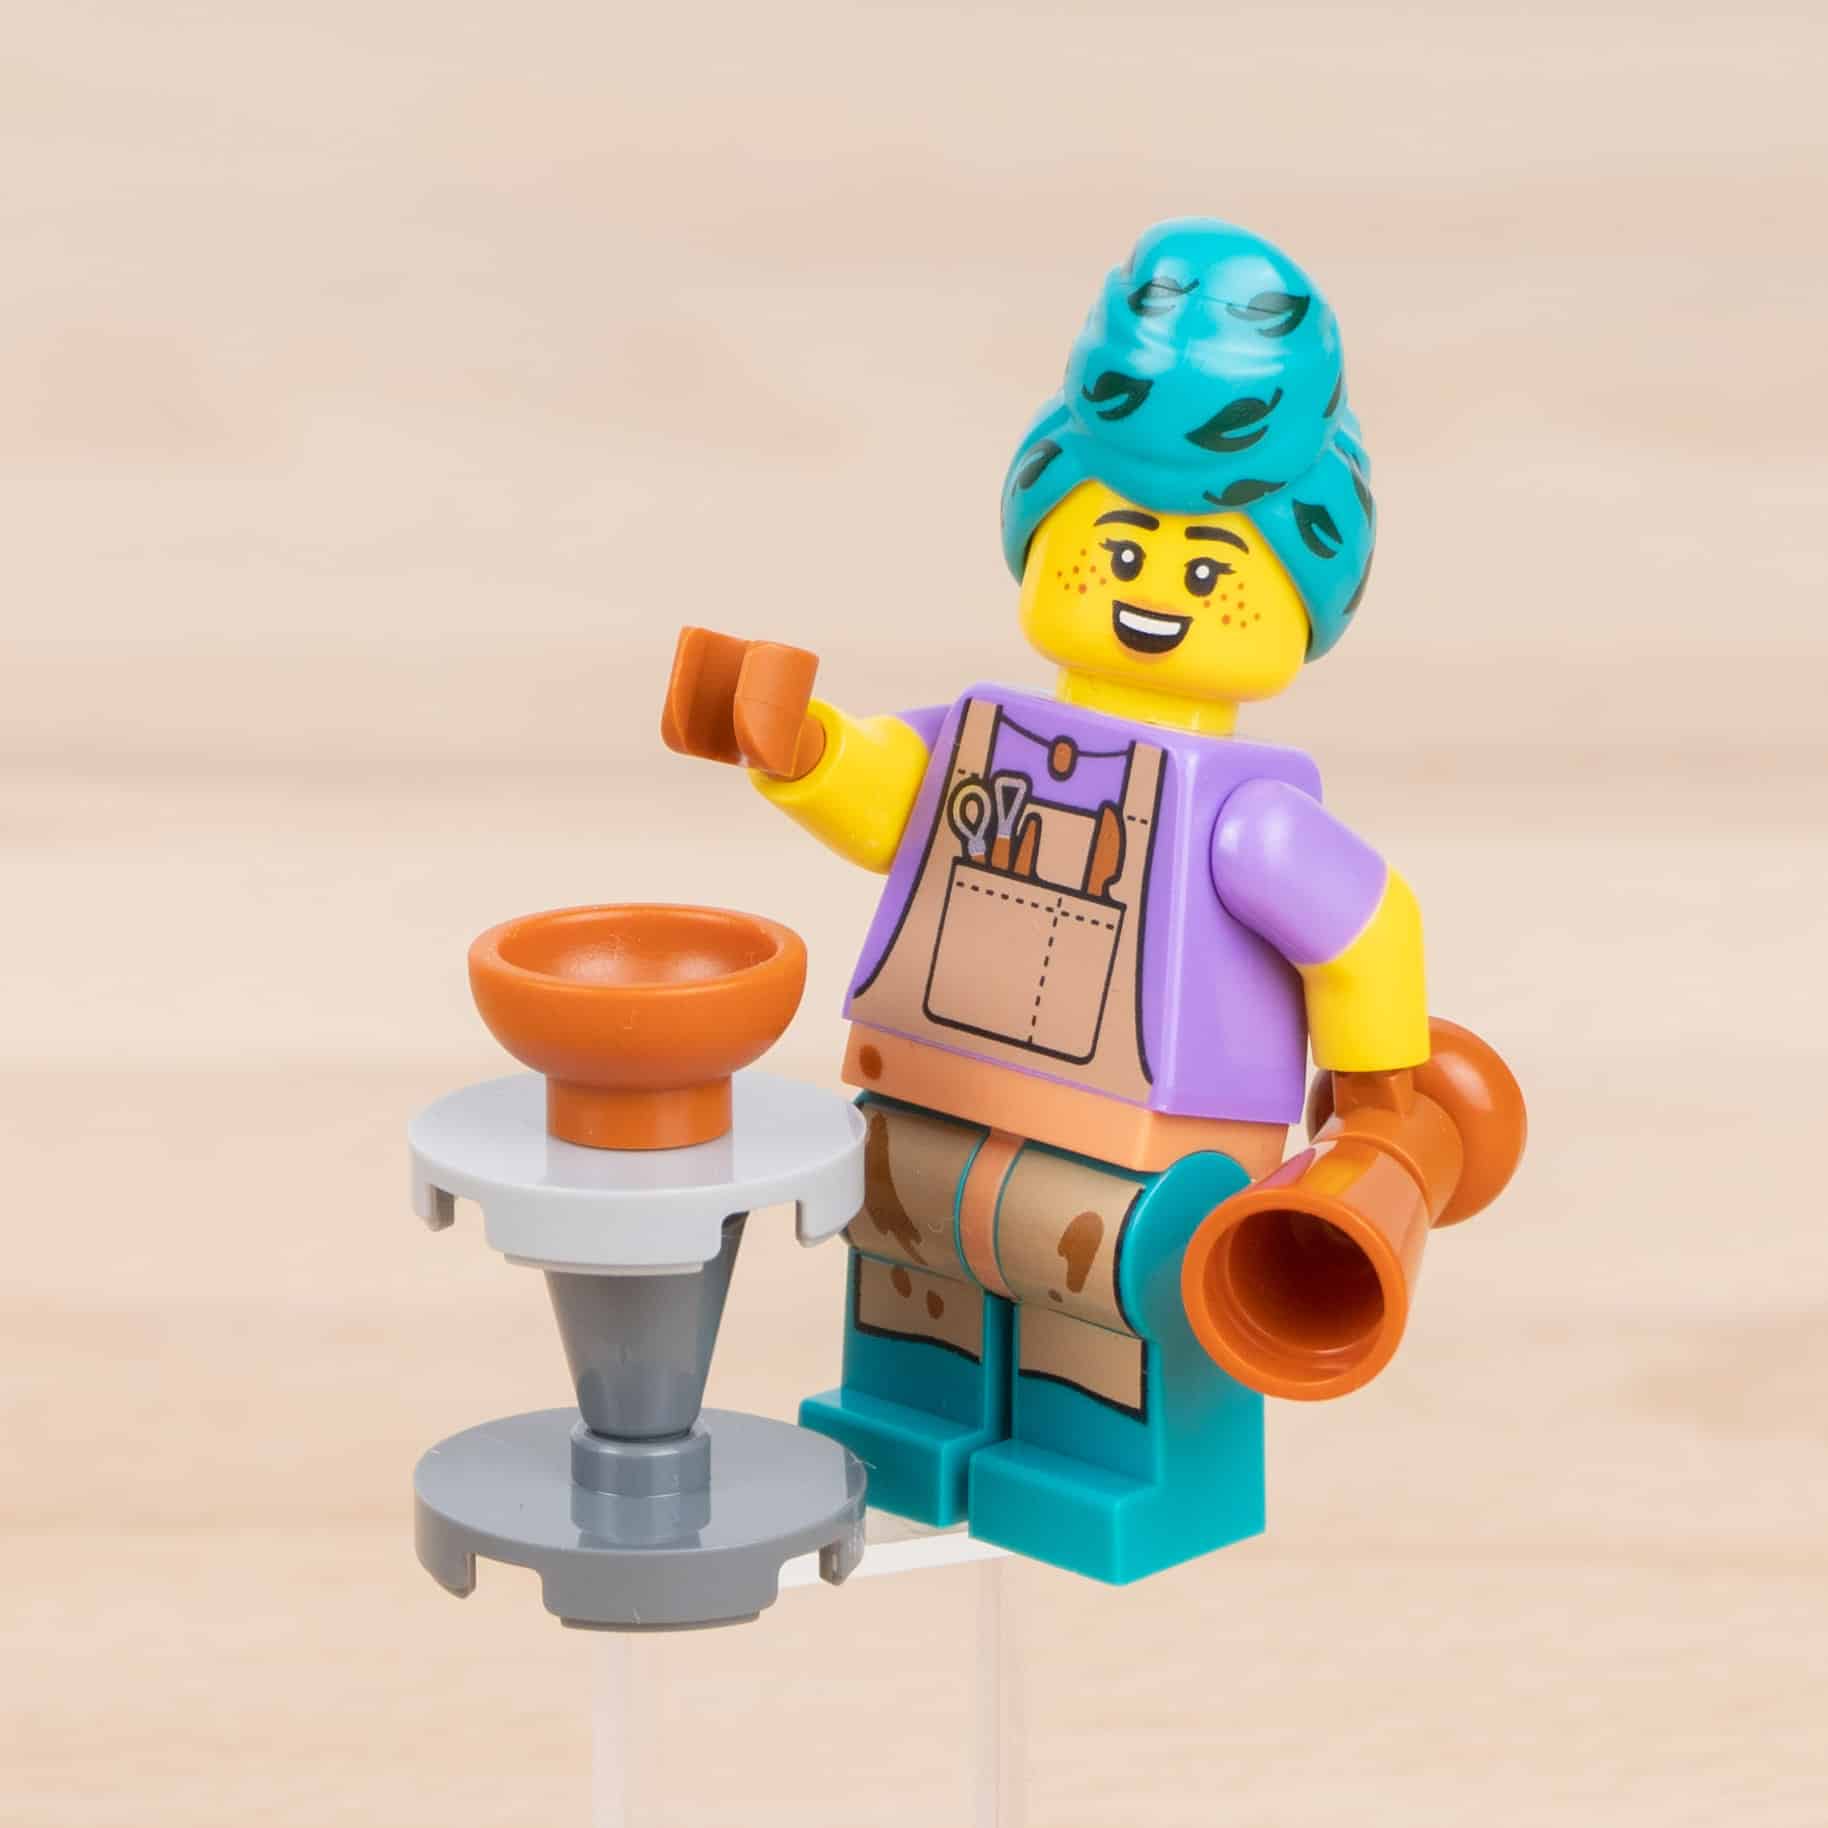 LEGO 71037 Sammel Minifiguren Serie 24 Review 14